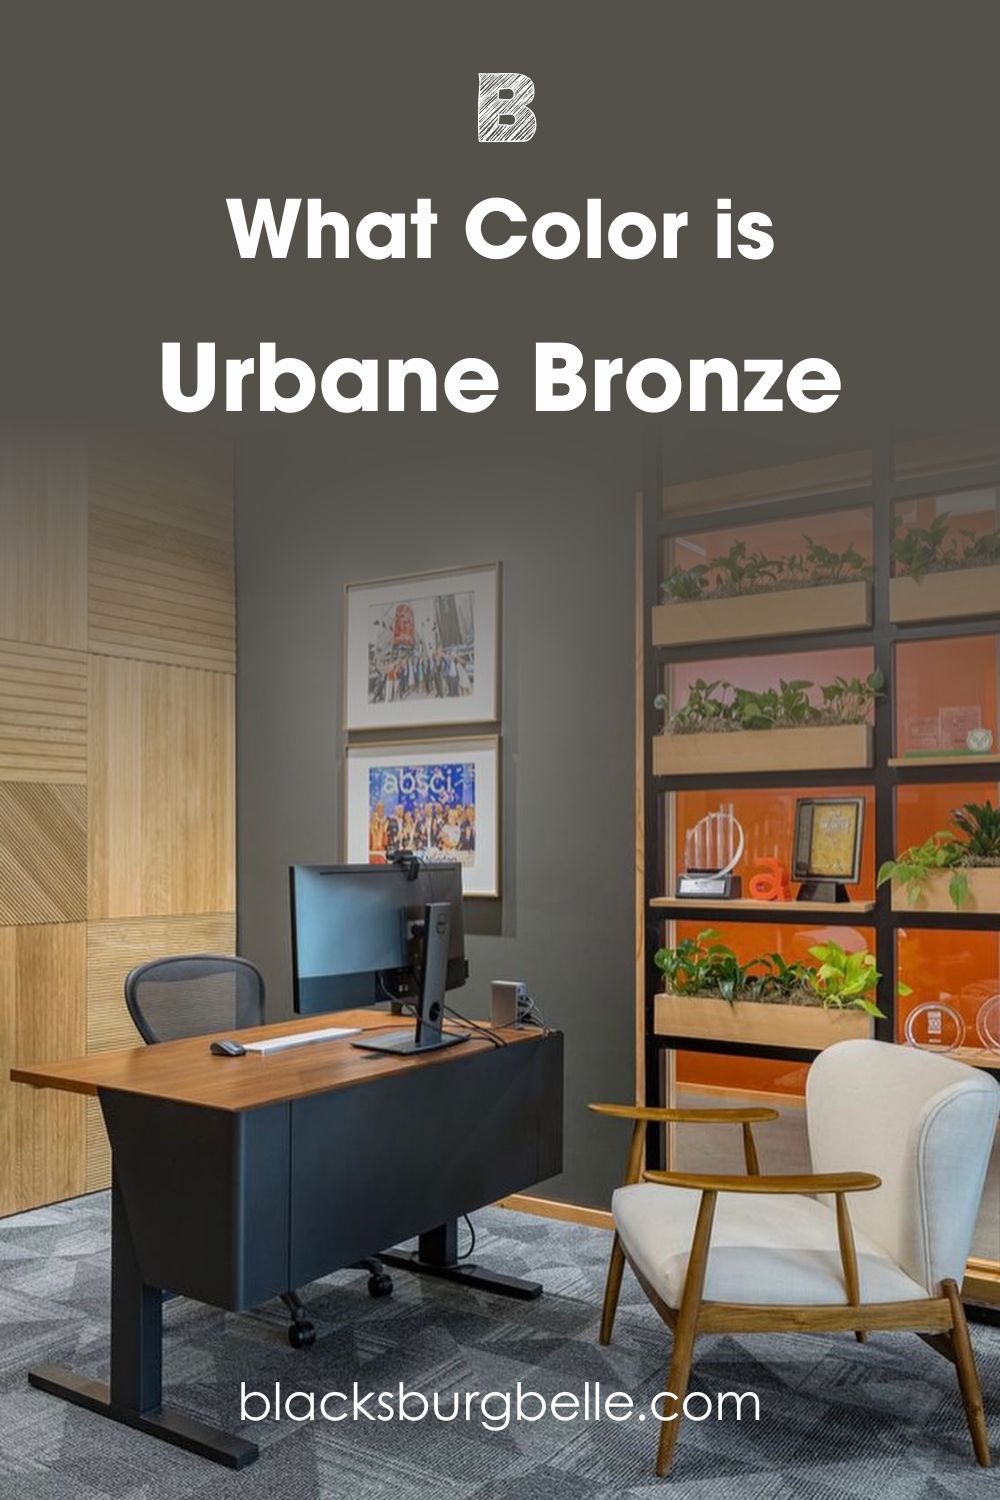 A Visual Comparison of Urbane Bronze